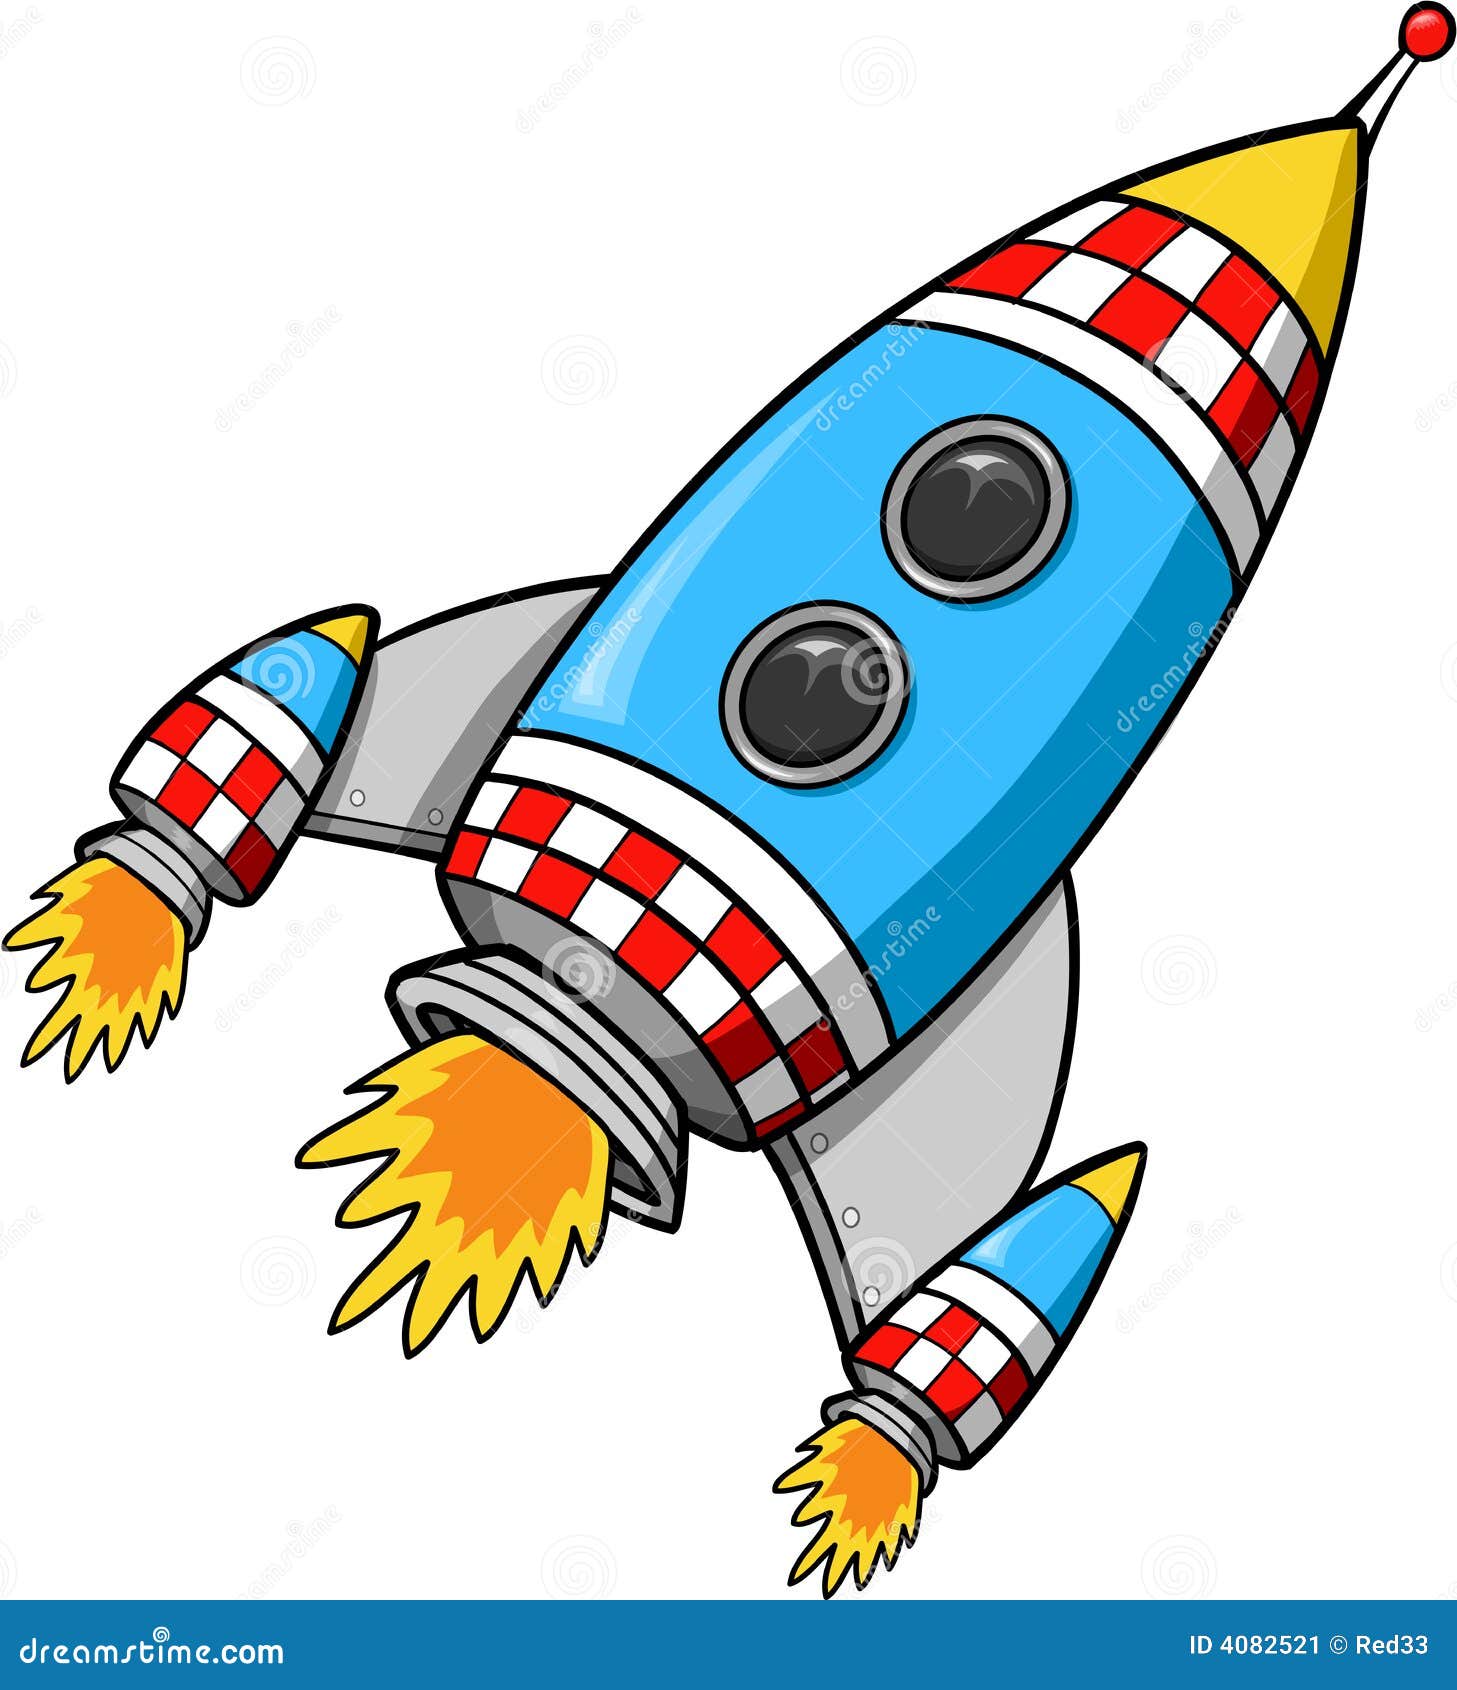 Картинки ракеты для детей дошкольного возраста. Мультяшные ракеты. Космический корабль для детей. Ракета для детей дошкольного возраста. Изображение космической ракеты для детей.